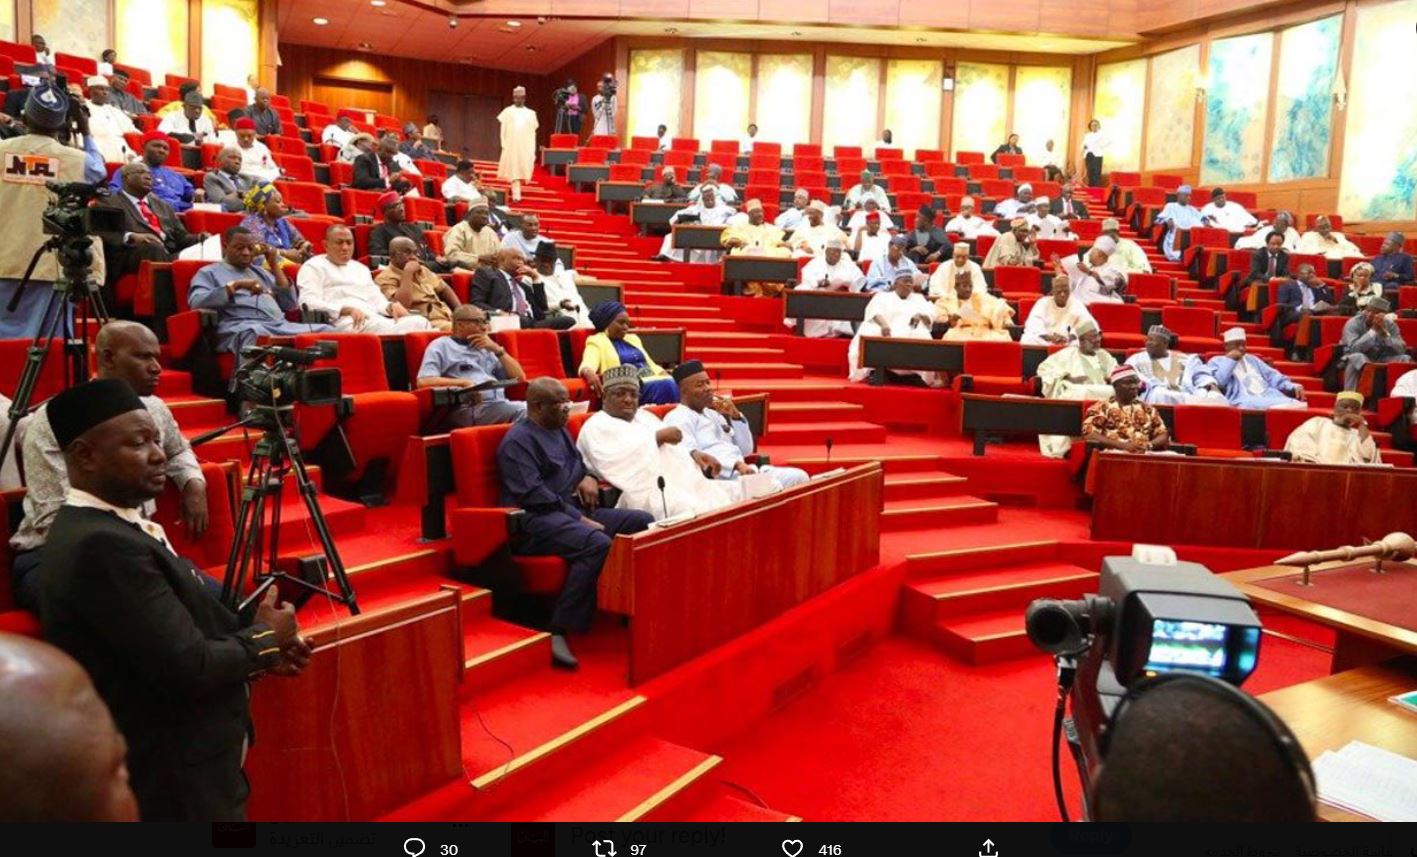 مجلس الشيوخ النيجيري يرفض التدخل العسكري في النيجر سلمياً